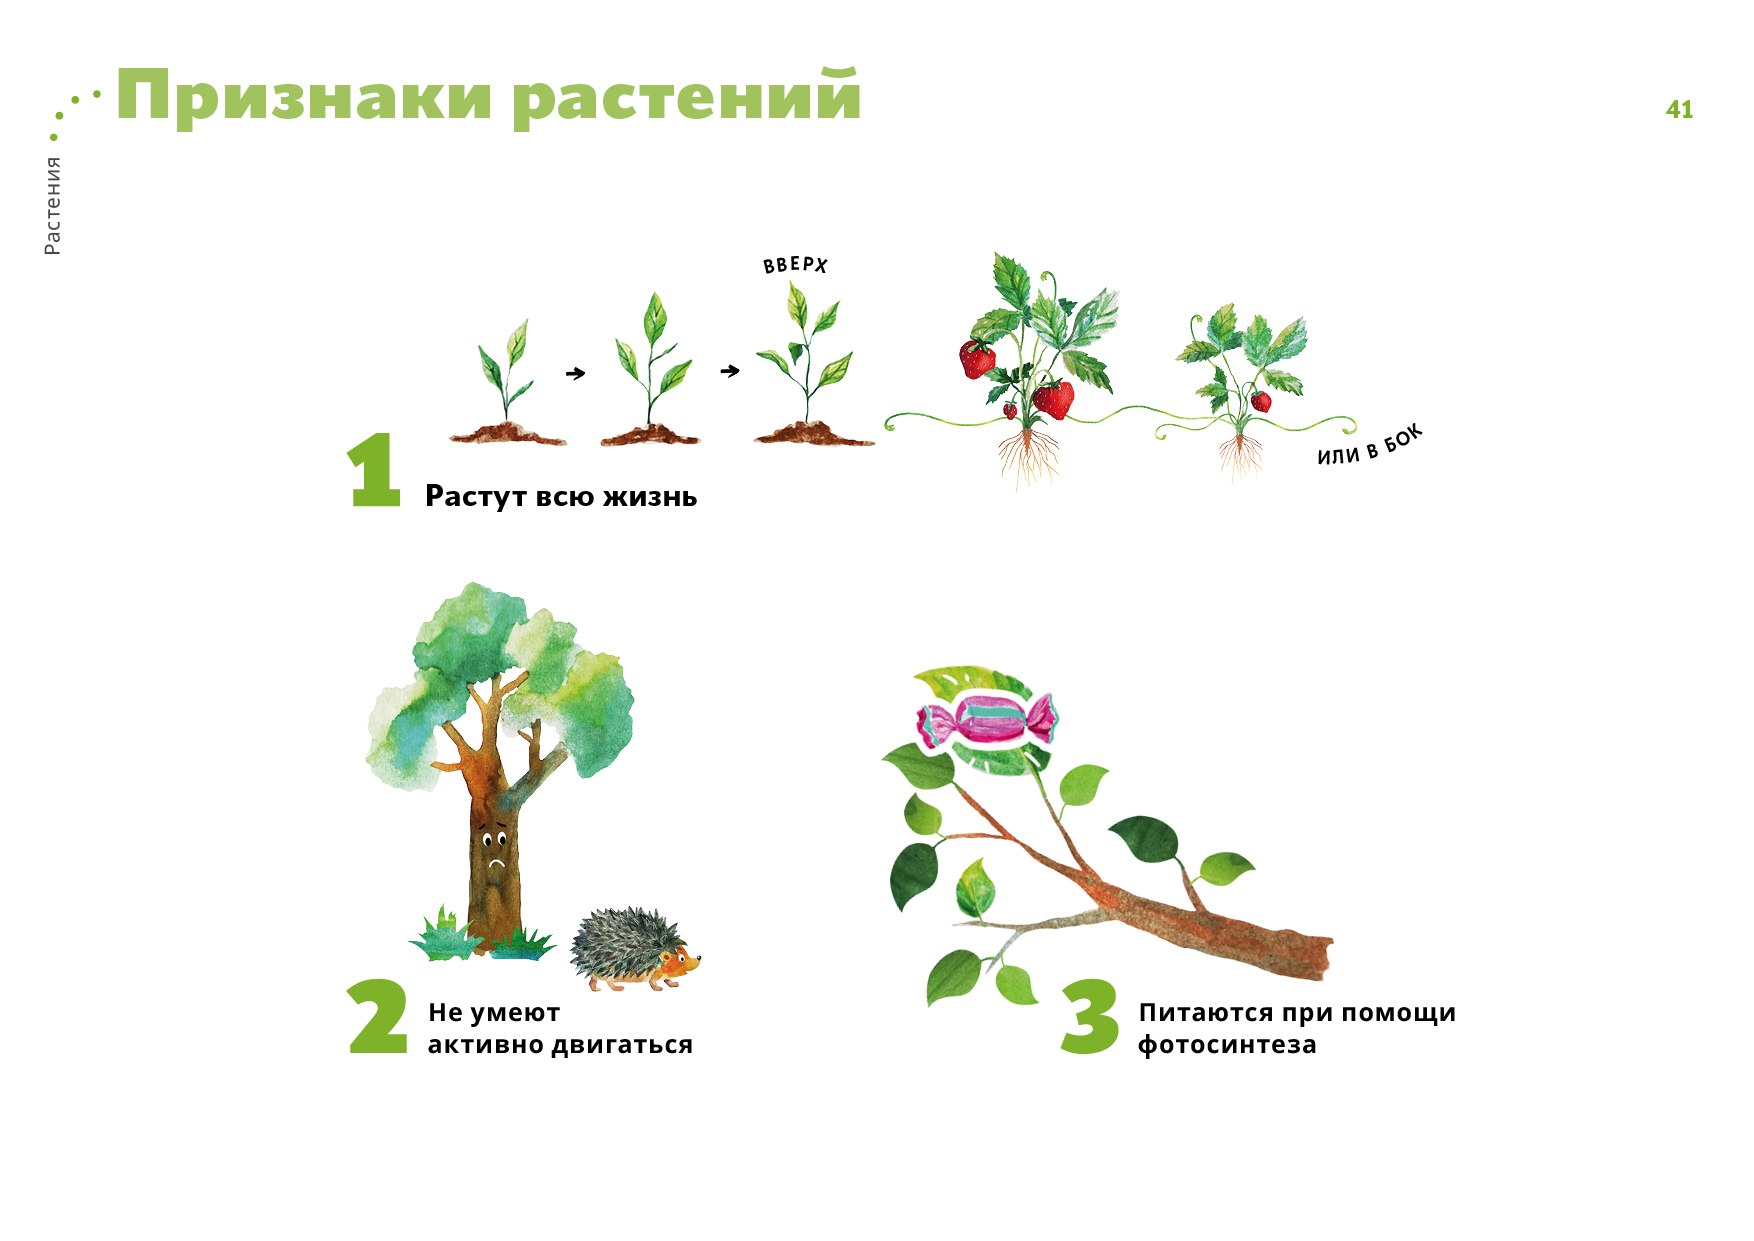 Признаки описывающие рост растения. Признаки растений. Основные признаки растений. Признаки всех растений. 5 Признаков растений.